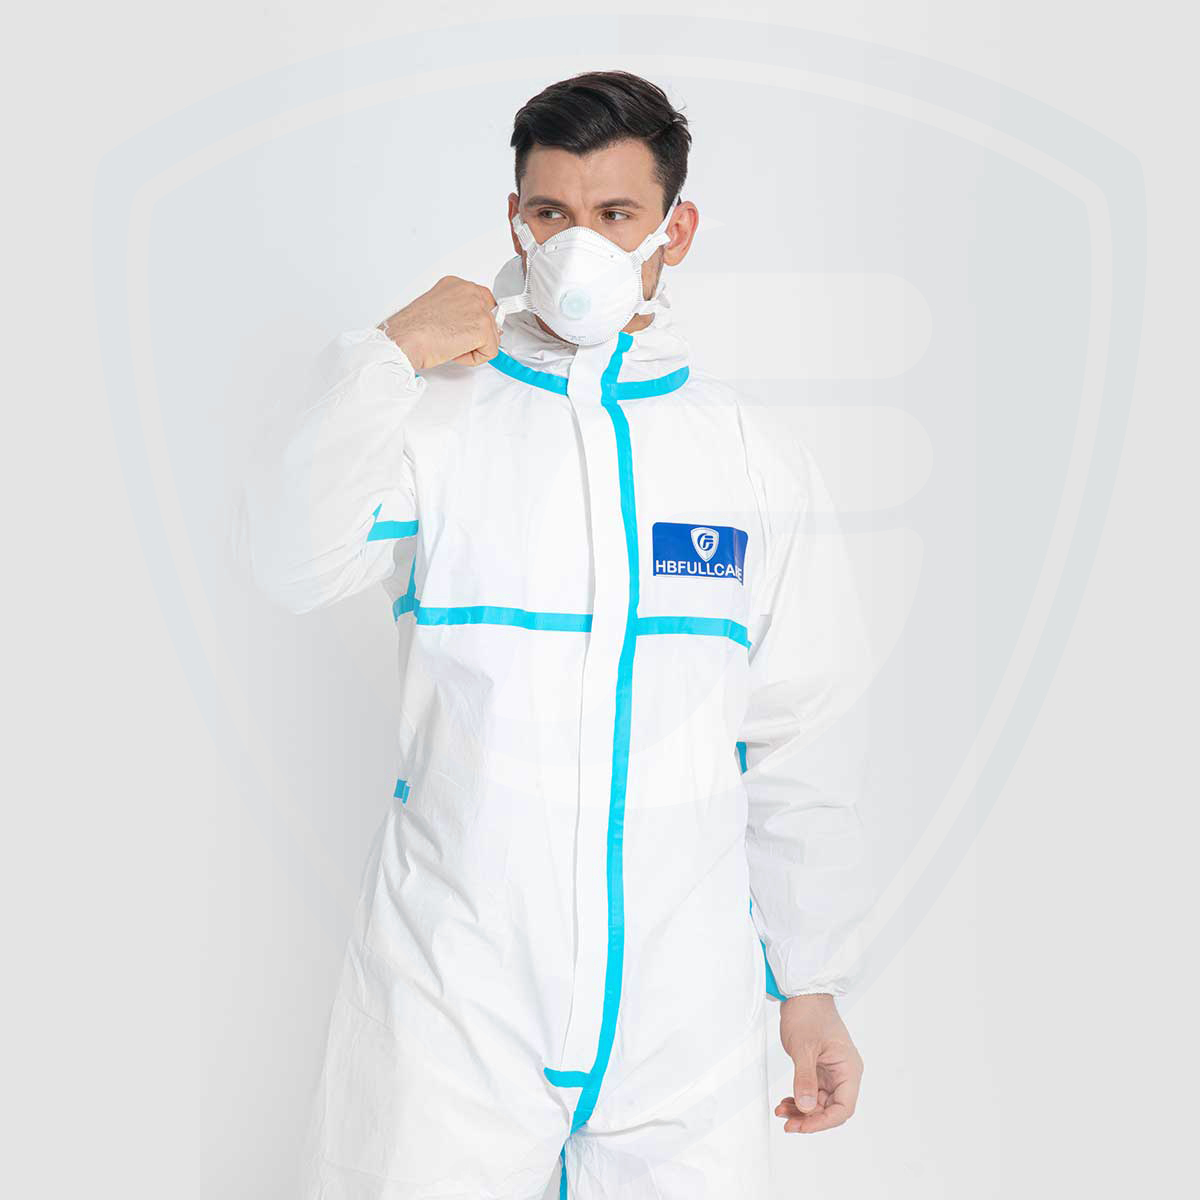 Vêtements de protection de type 4B contre les liquides contaminés et les agents infectieux